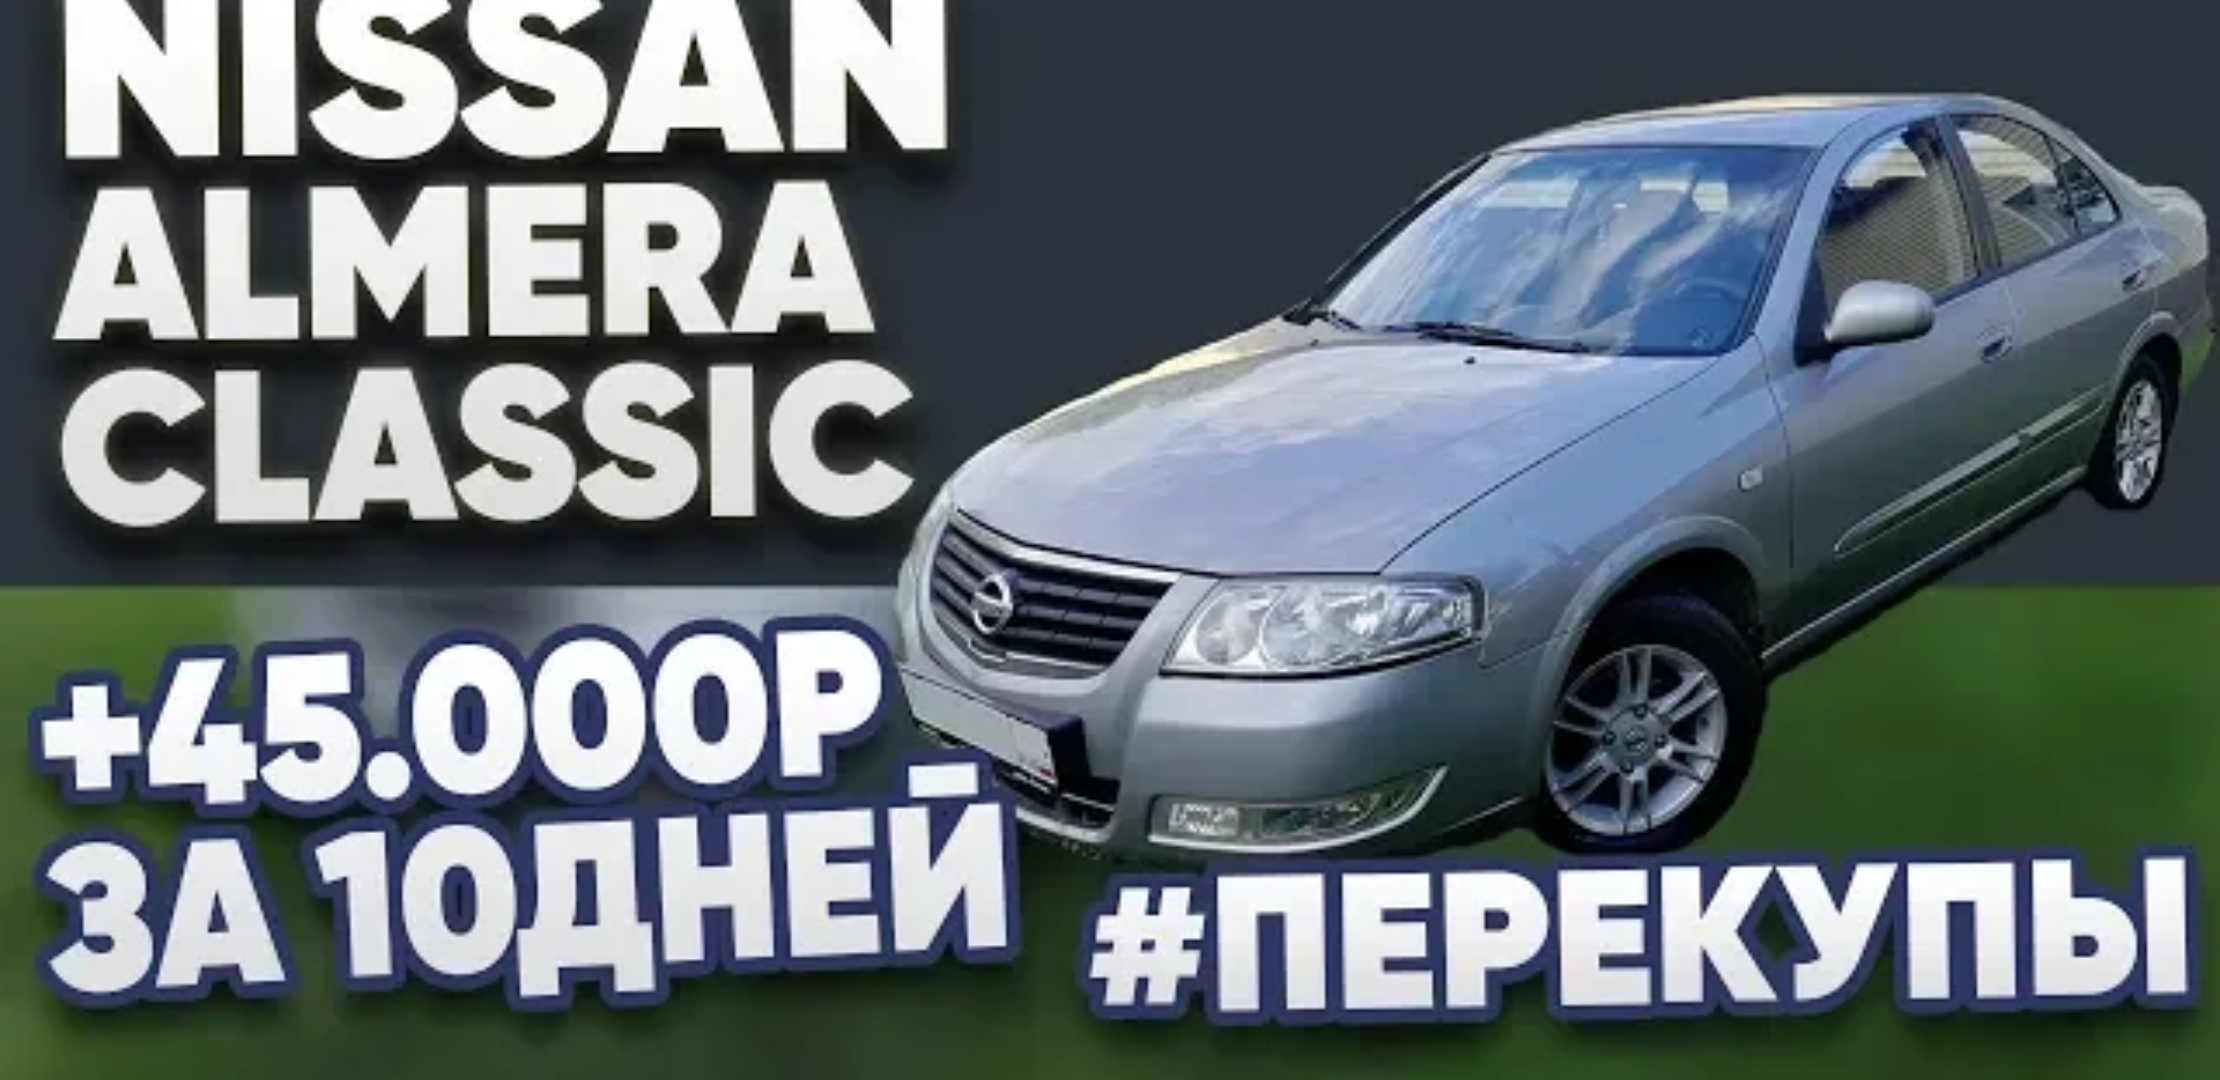 Анонс видео-теста Nissan Almera Classic +45.000р за 10 дней # перекупы авто